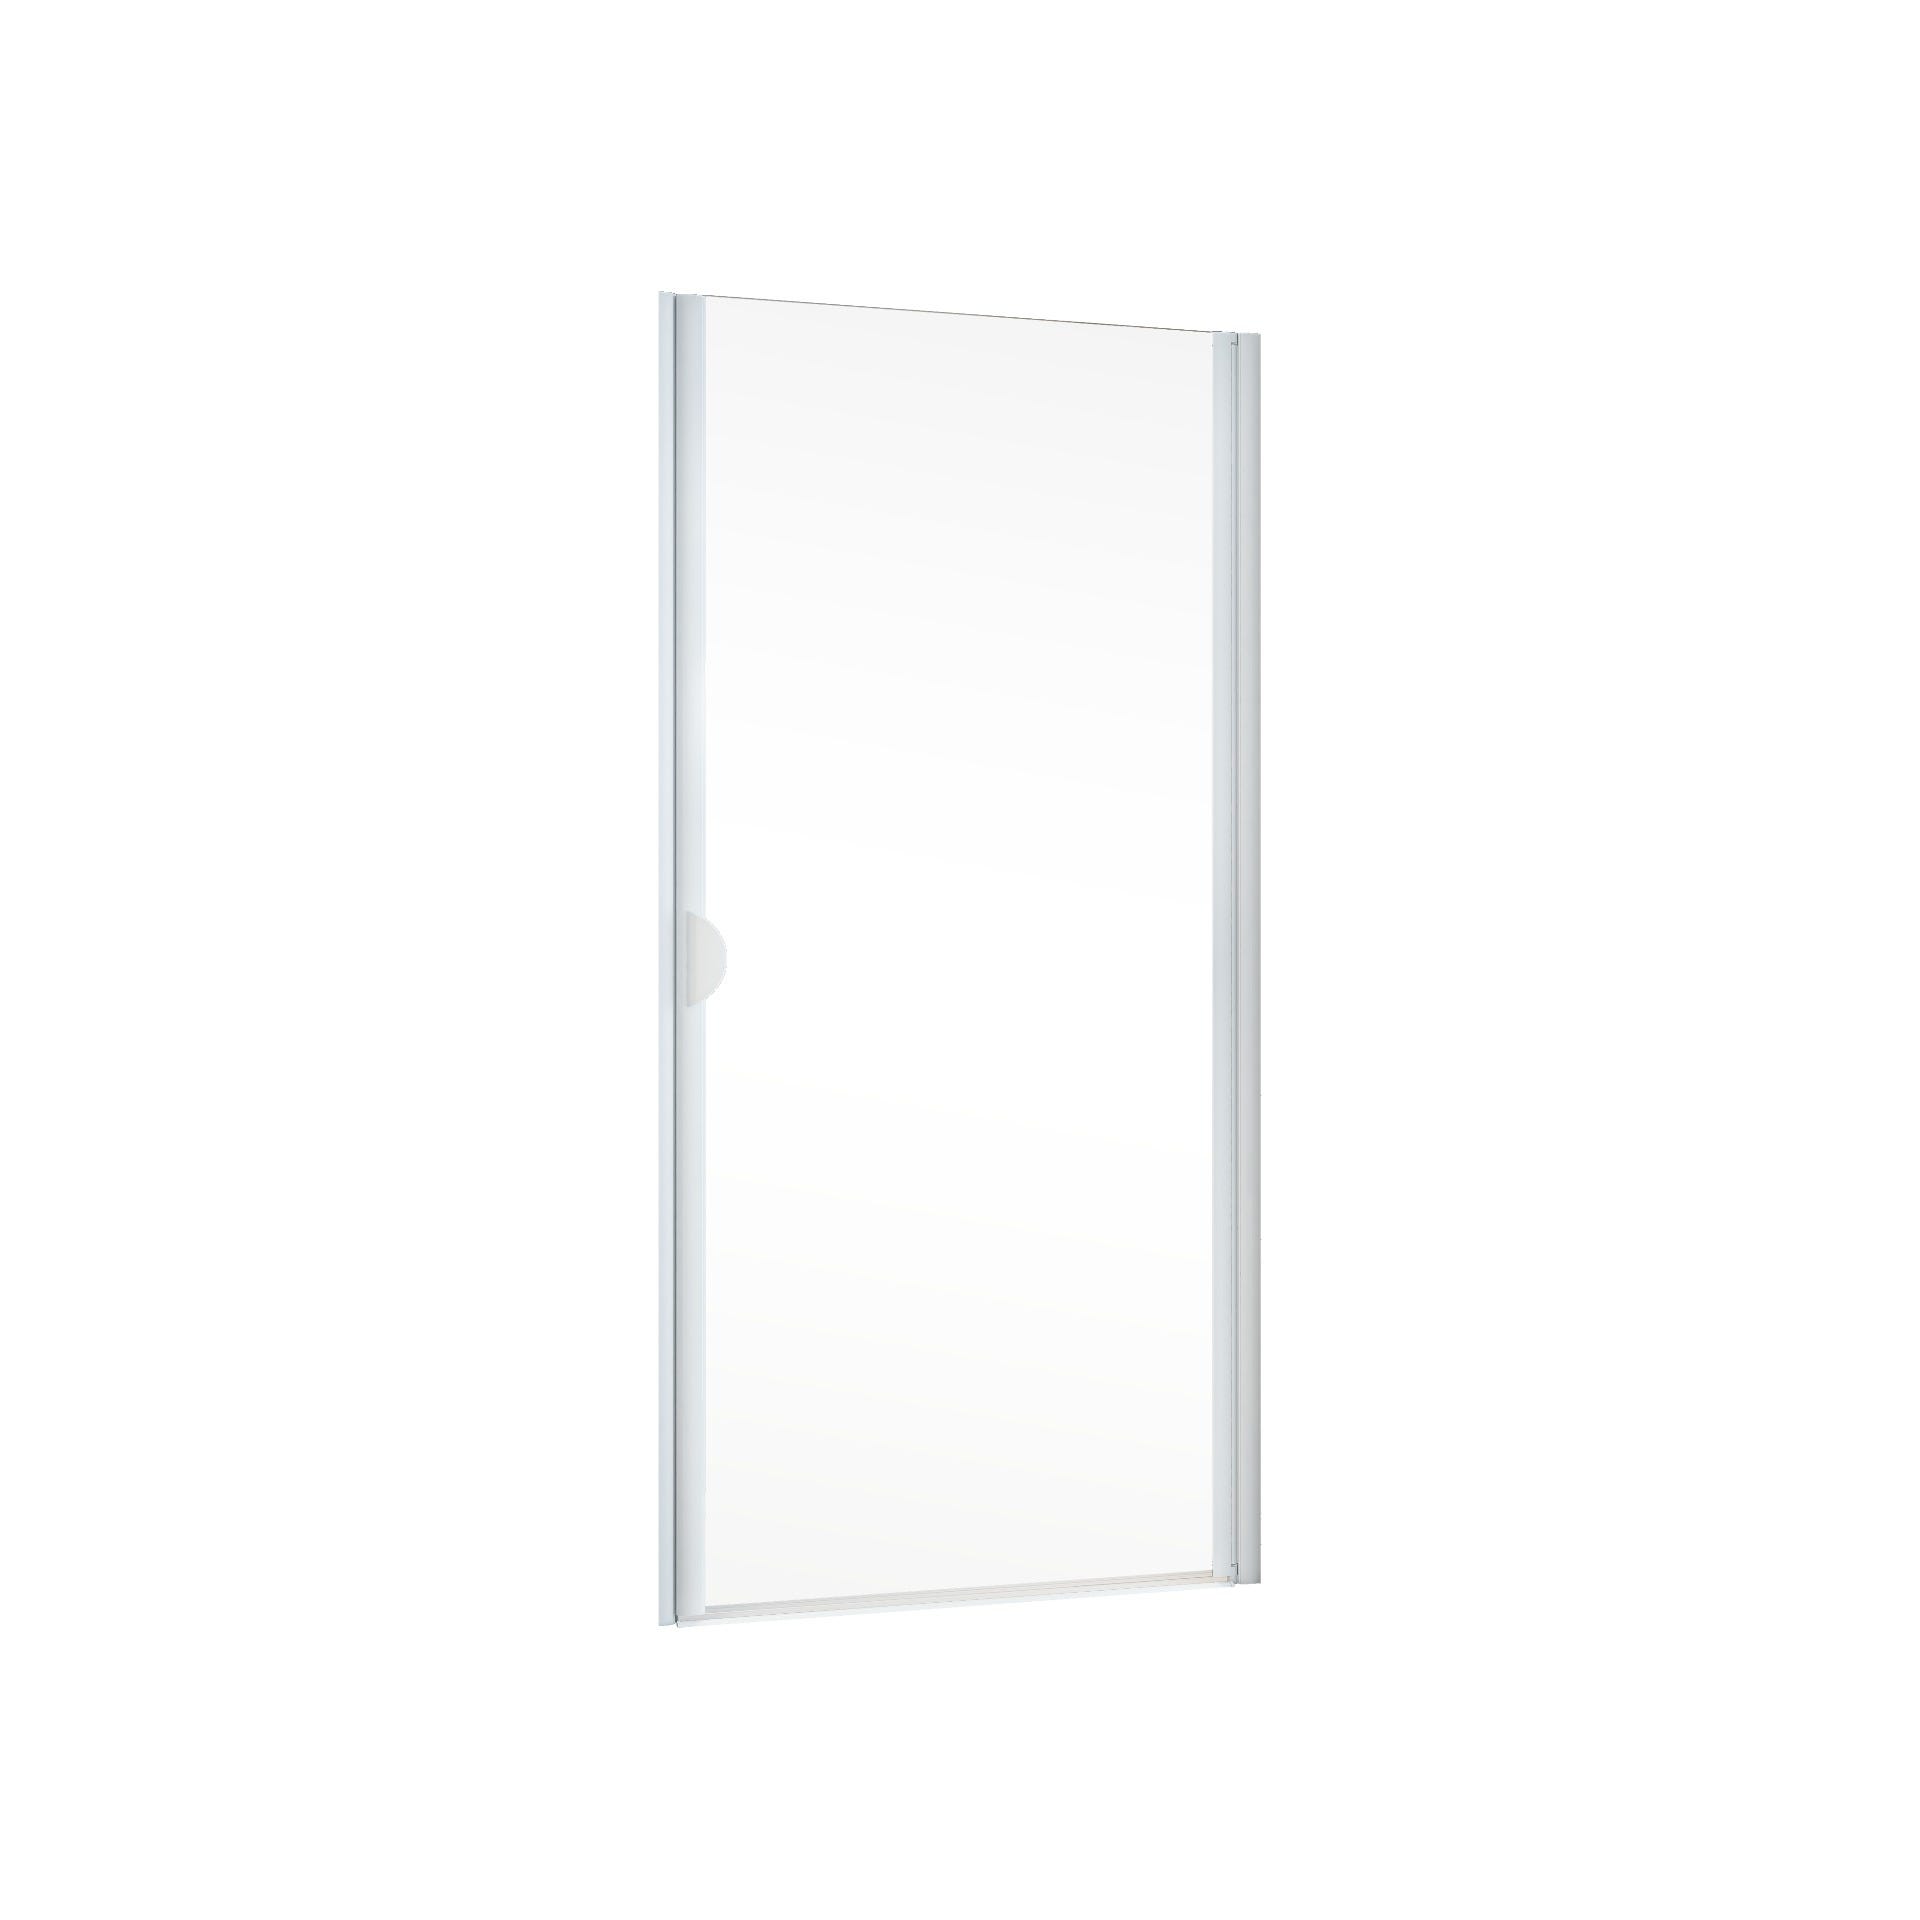 Schulte porte de douche pivotante, 90 x 180 cm, verre transparent 5 mm, profilé blanc, Sunny 1